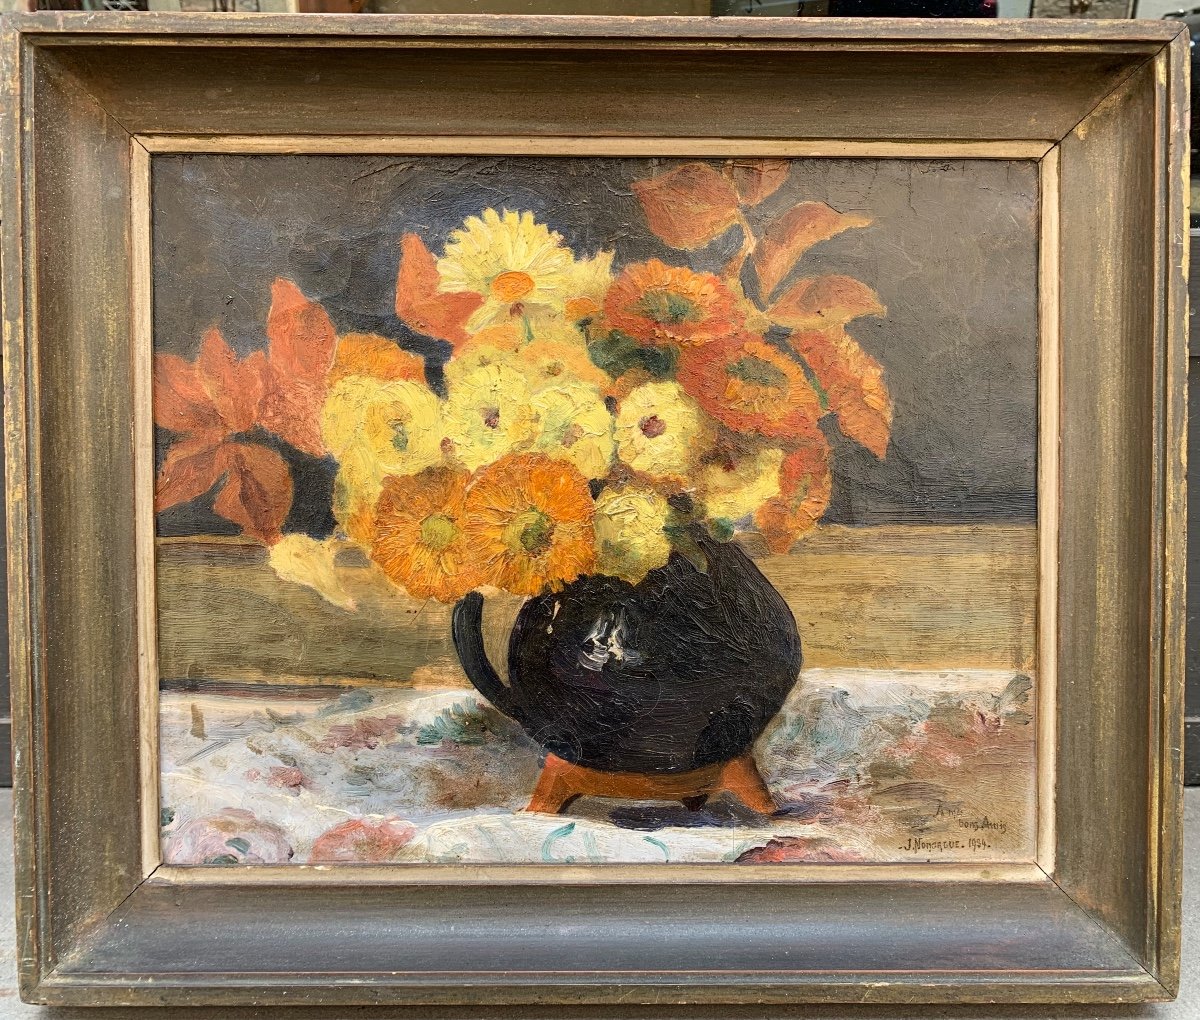 Una natura morta datata 1934 con un bouquet di fiori arancioni e gialli.